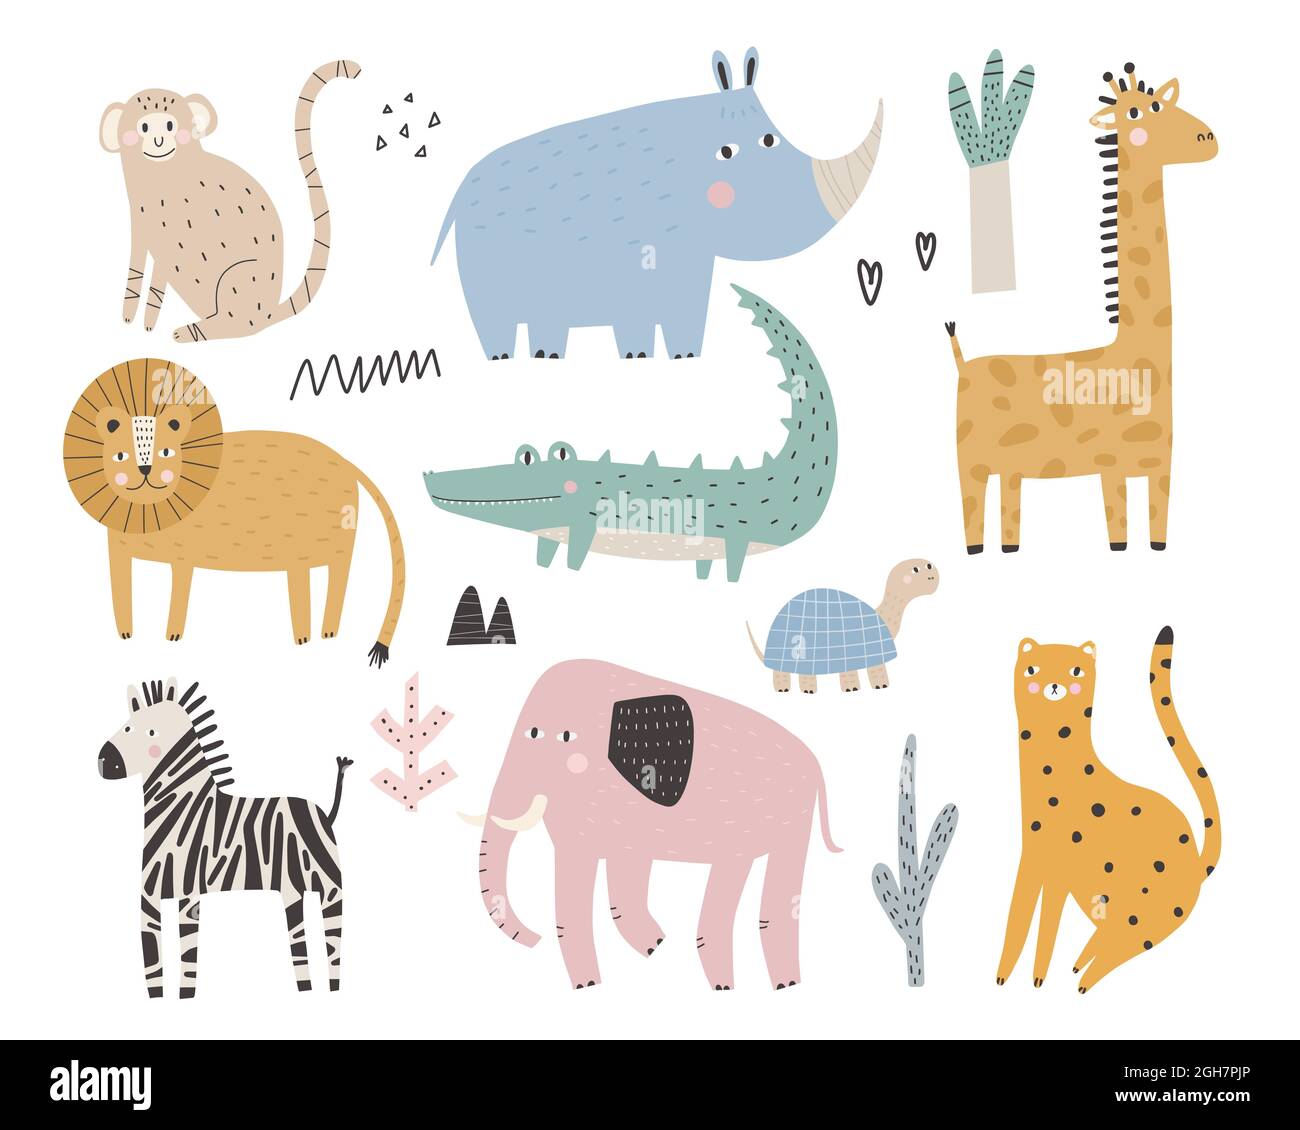 Niedliche afrikanische Tiere und Pflanzen im skandinavischen Stil Vektor handgezeichnete farbige Kinder einfaches Set Elefant, Leopard, Schildkröte, Zebra, Affe Stock Vektor